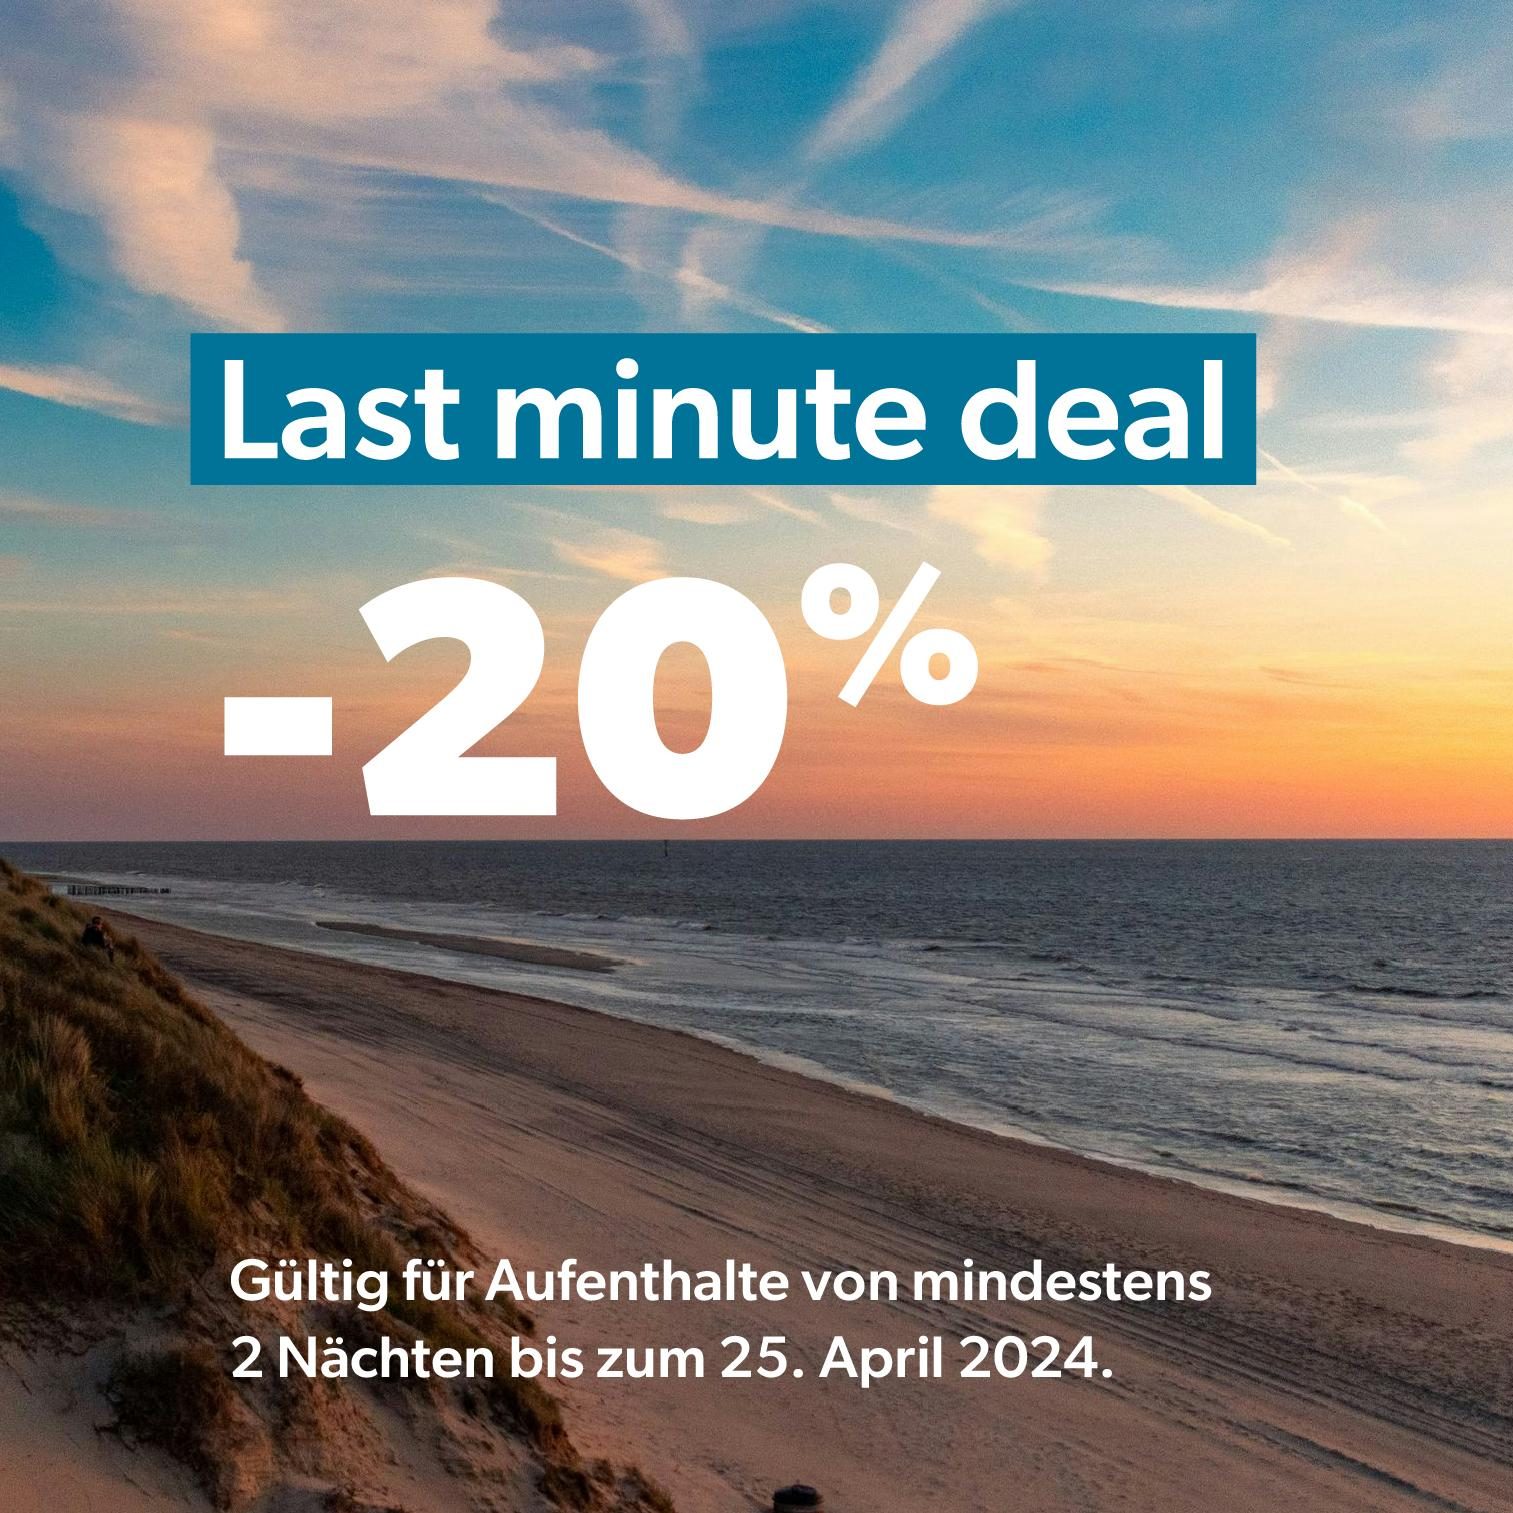 Last-Minute-Angebot: 20% Rabatt ab mindestens 2 Übernachtungen, gültig bis zum 30. April 2024.